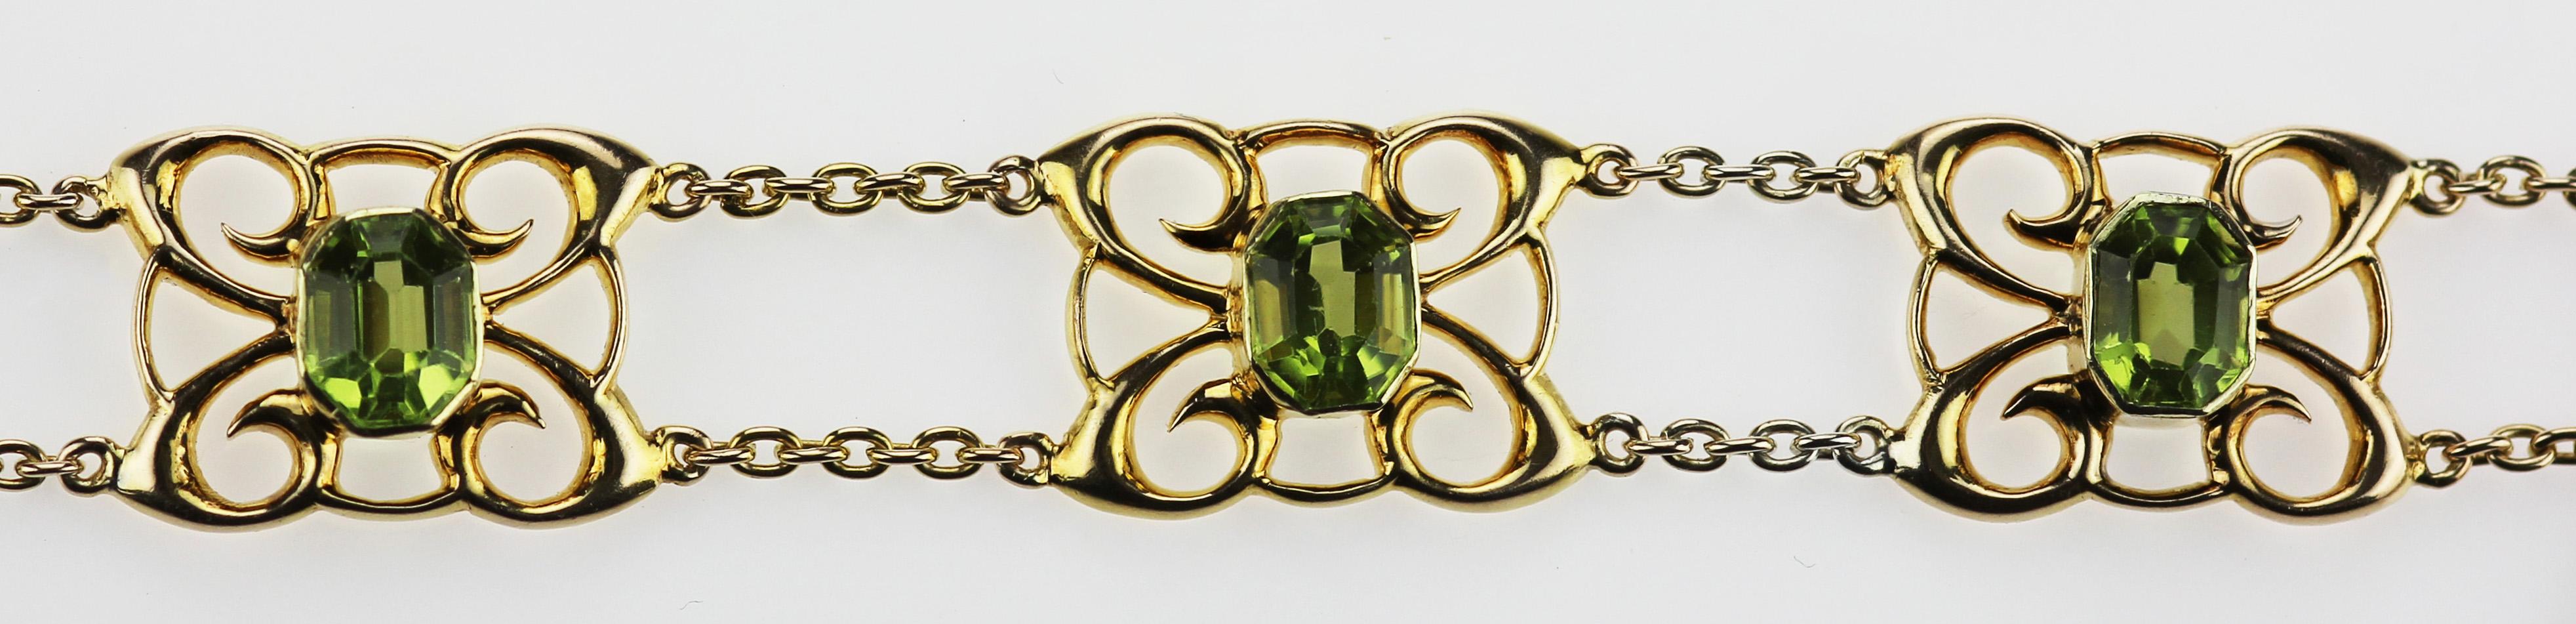 Emerald Cut Antique Edwardian 15 Carat Yellow Gold Peridot Bracelet in European Design